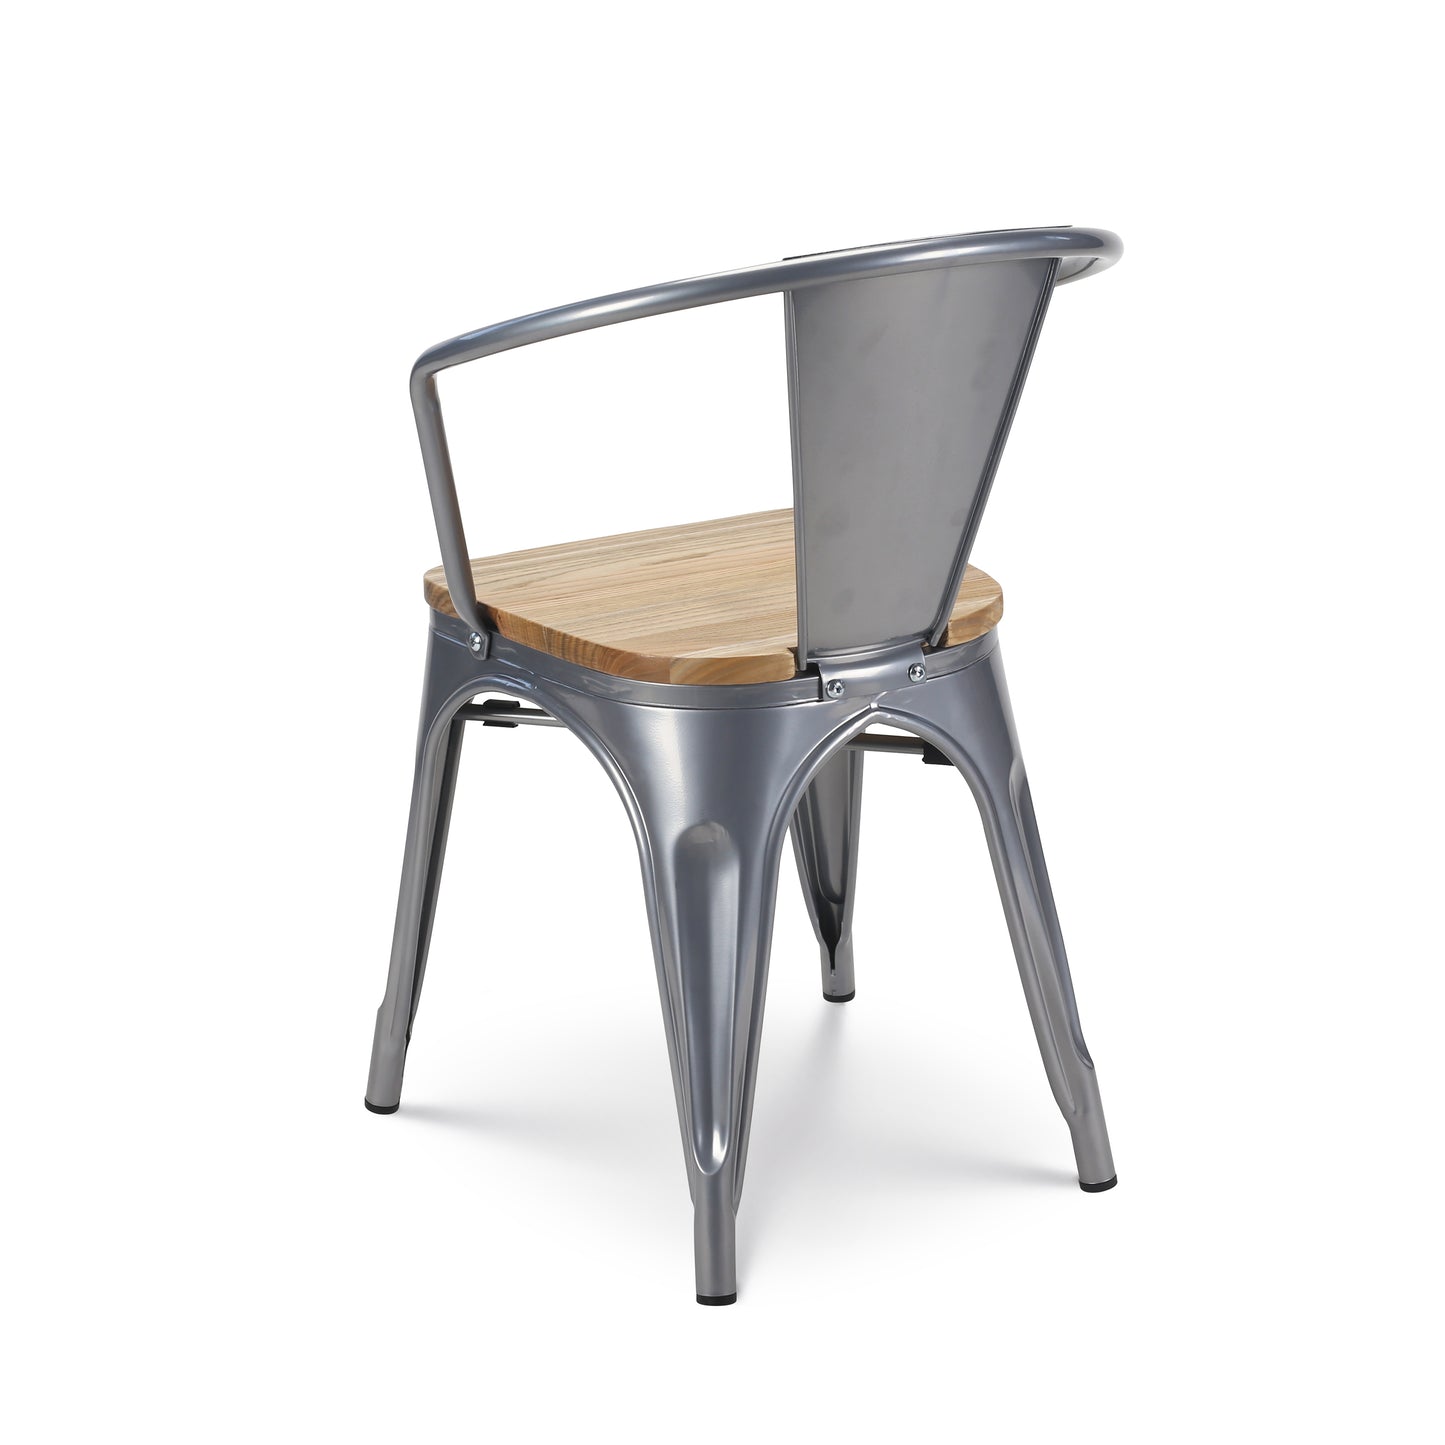 Lot de 4 chaises en métal gris argenté style industriel avec assise en bois clair - Avec accoudoirs